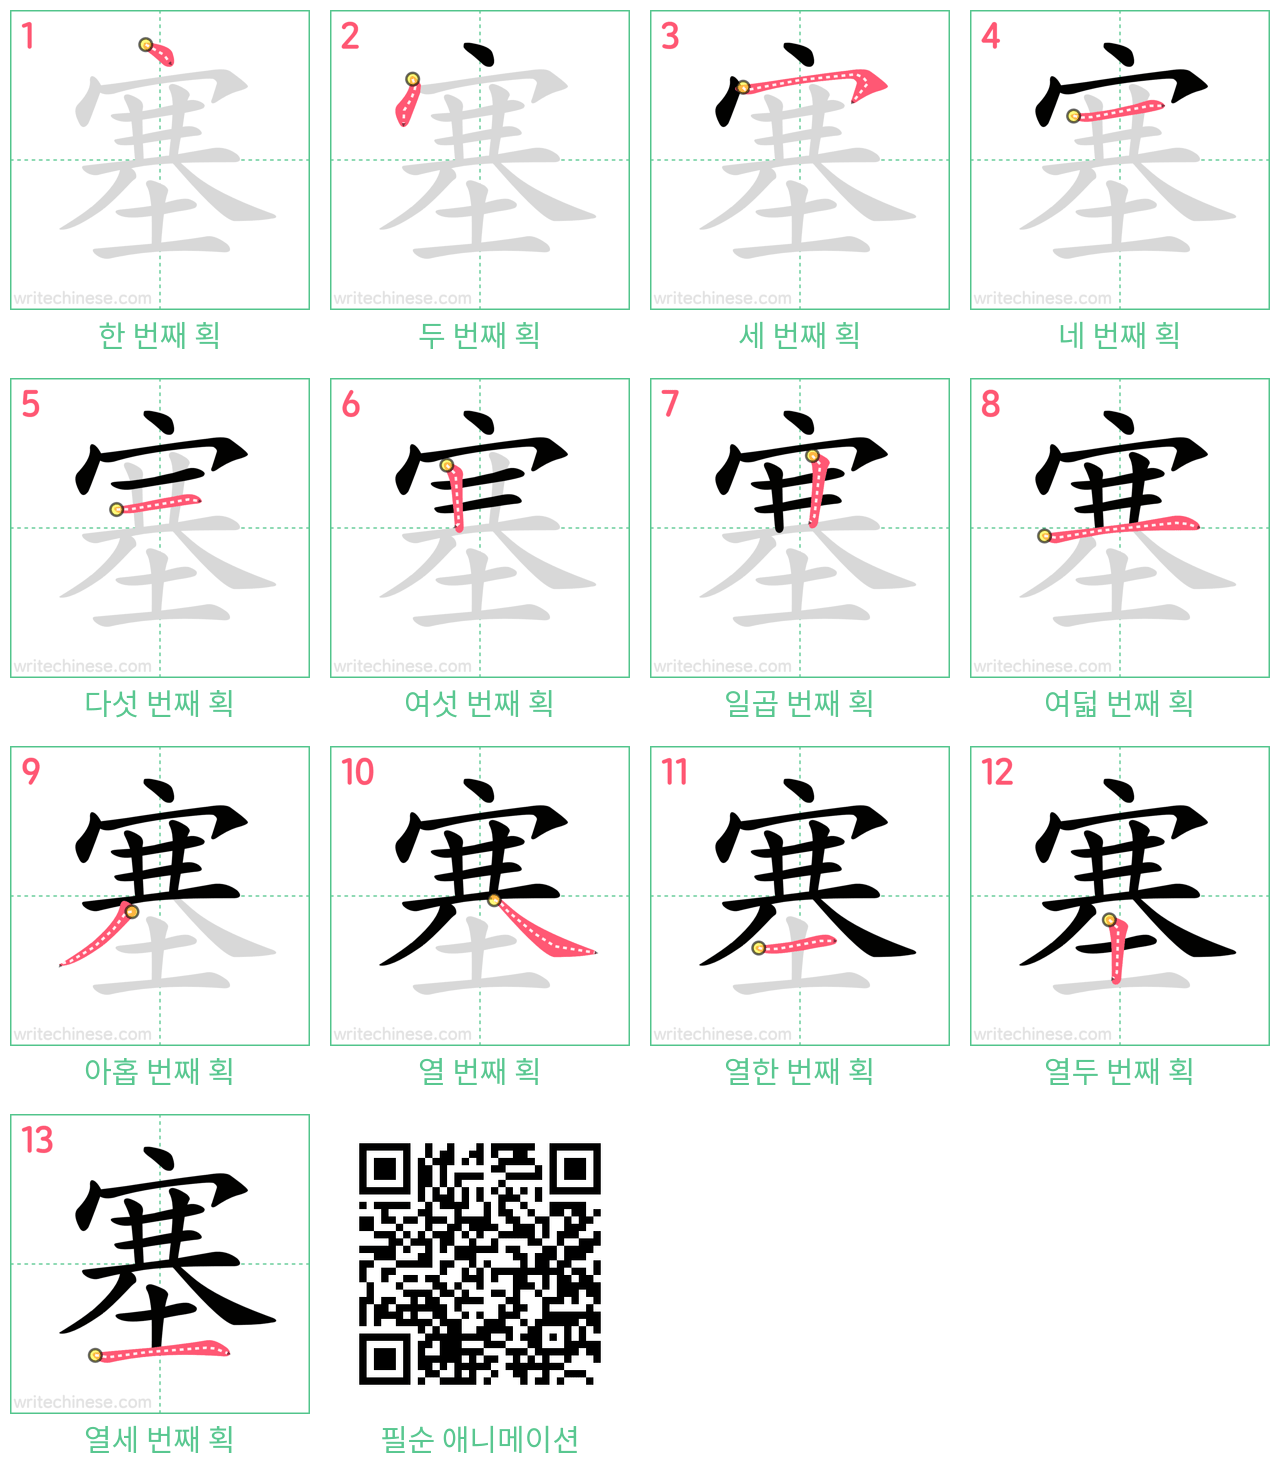 塞 step-by-step stroke order diagrams